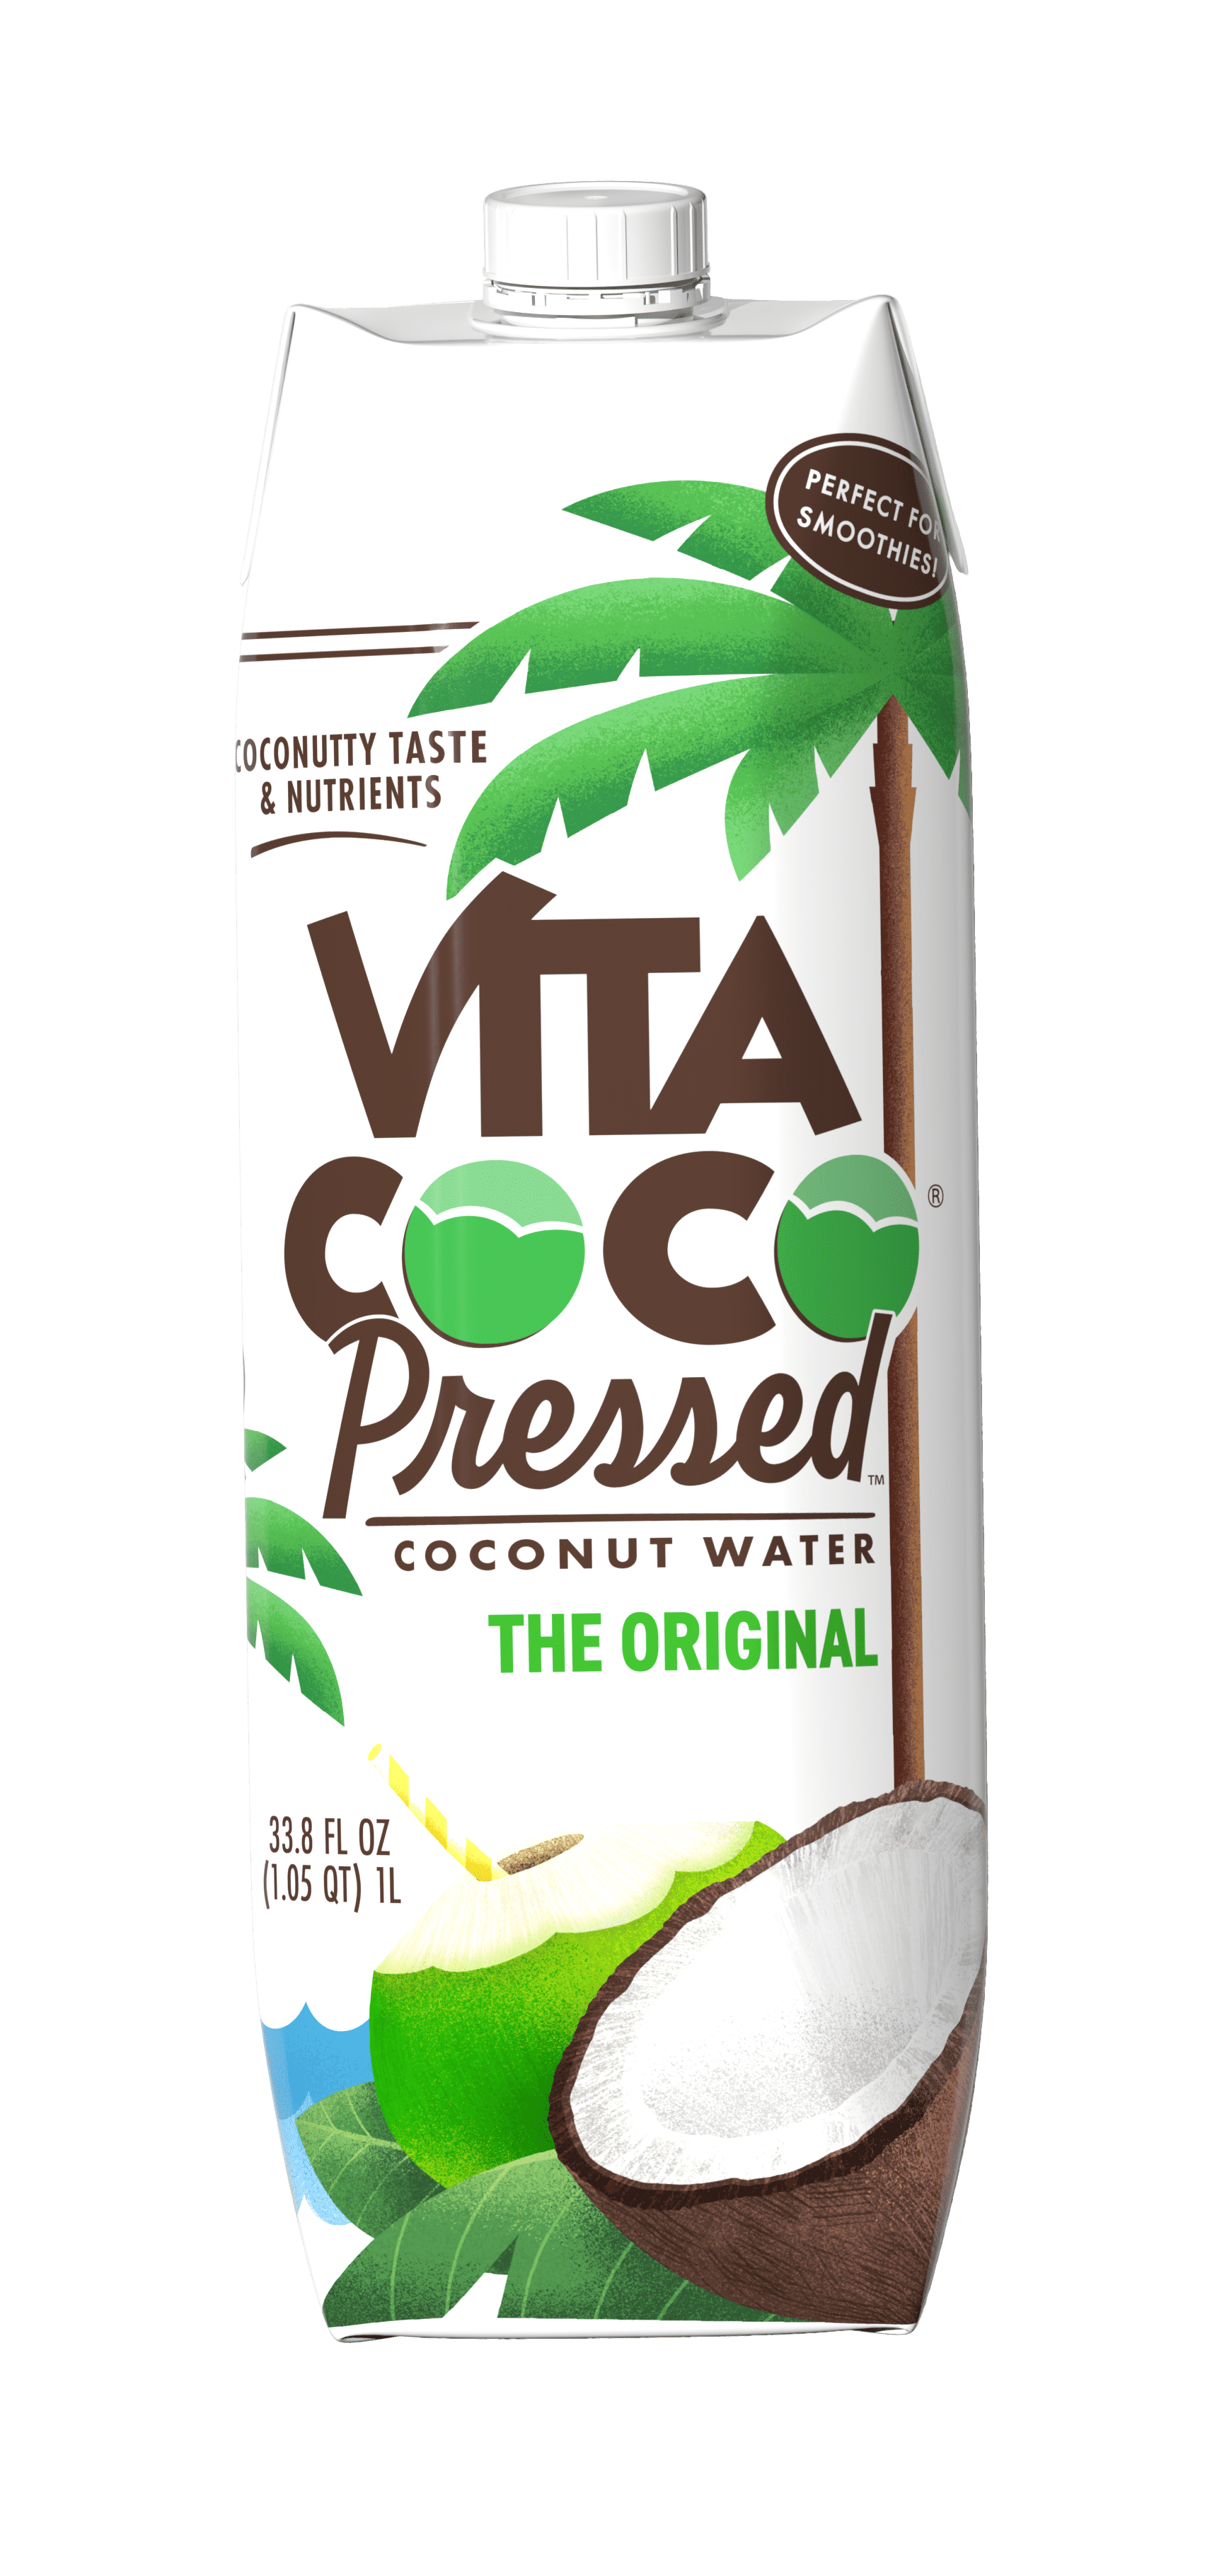 Vita Coco Pressed Coconut Water Nutrients Electrolytes Rich Original Fl Oz Tetra